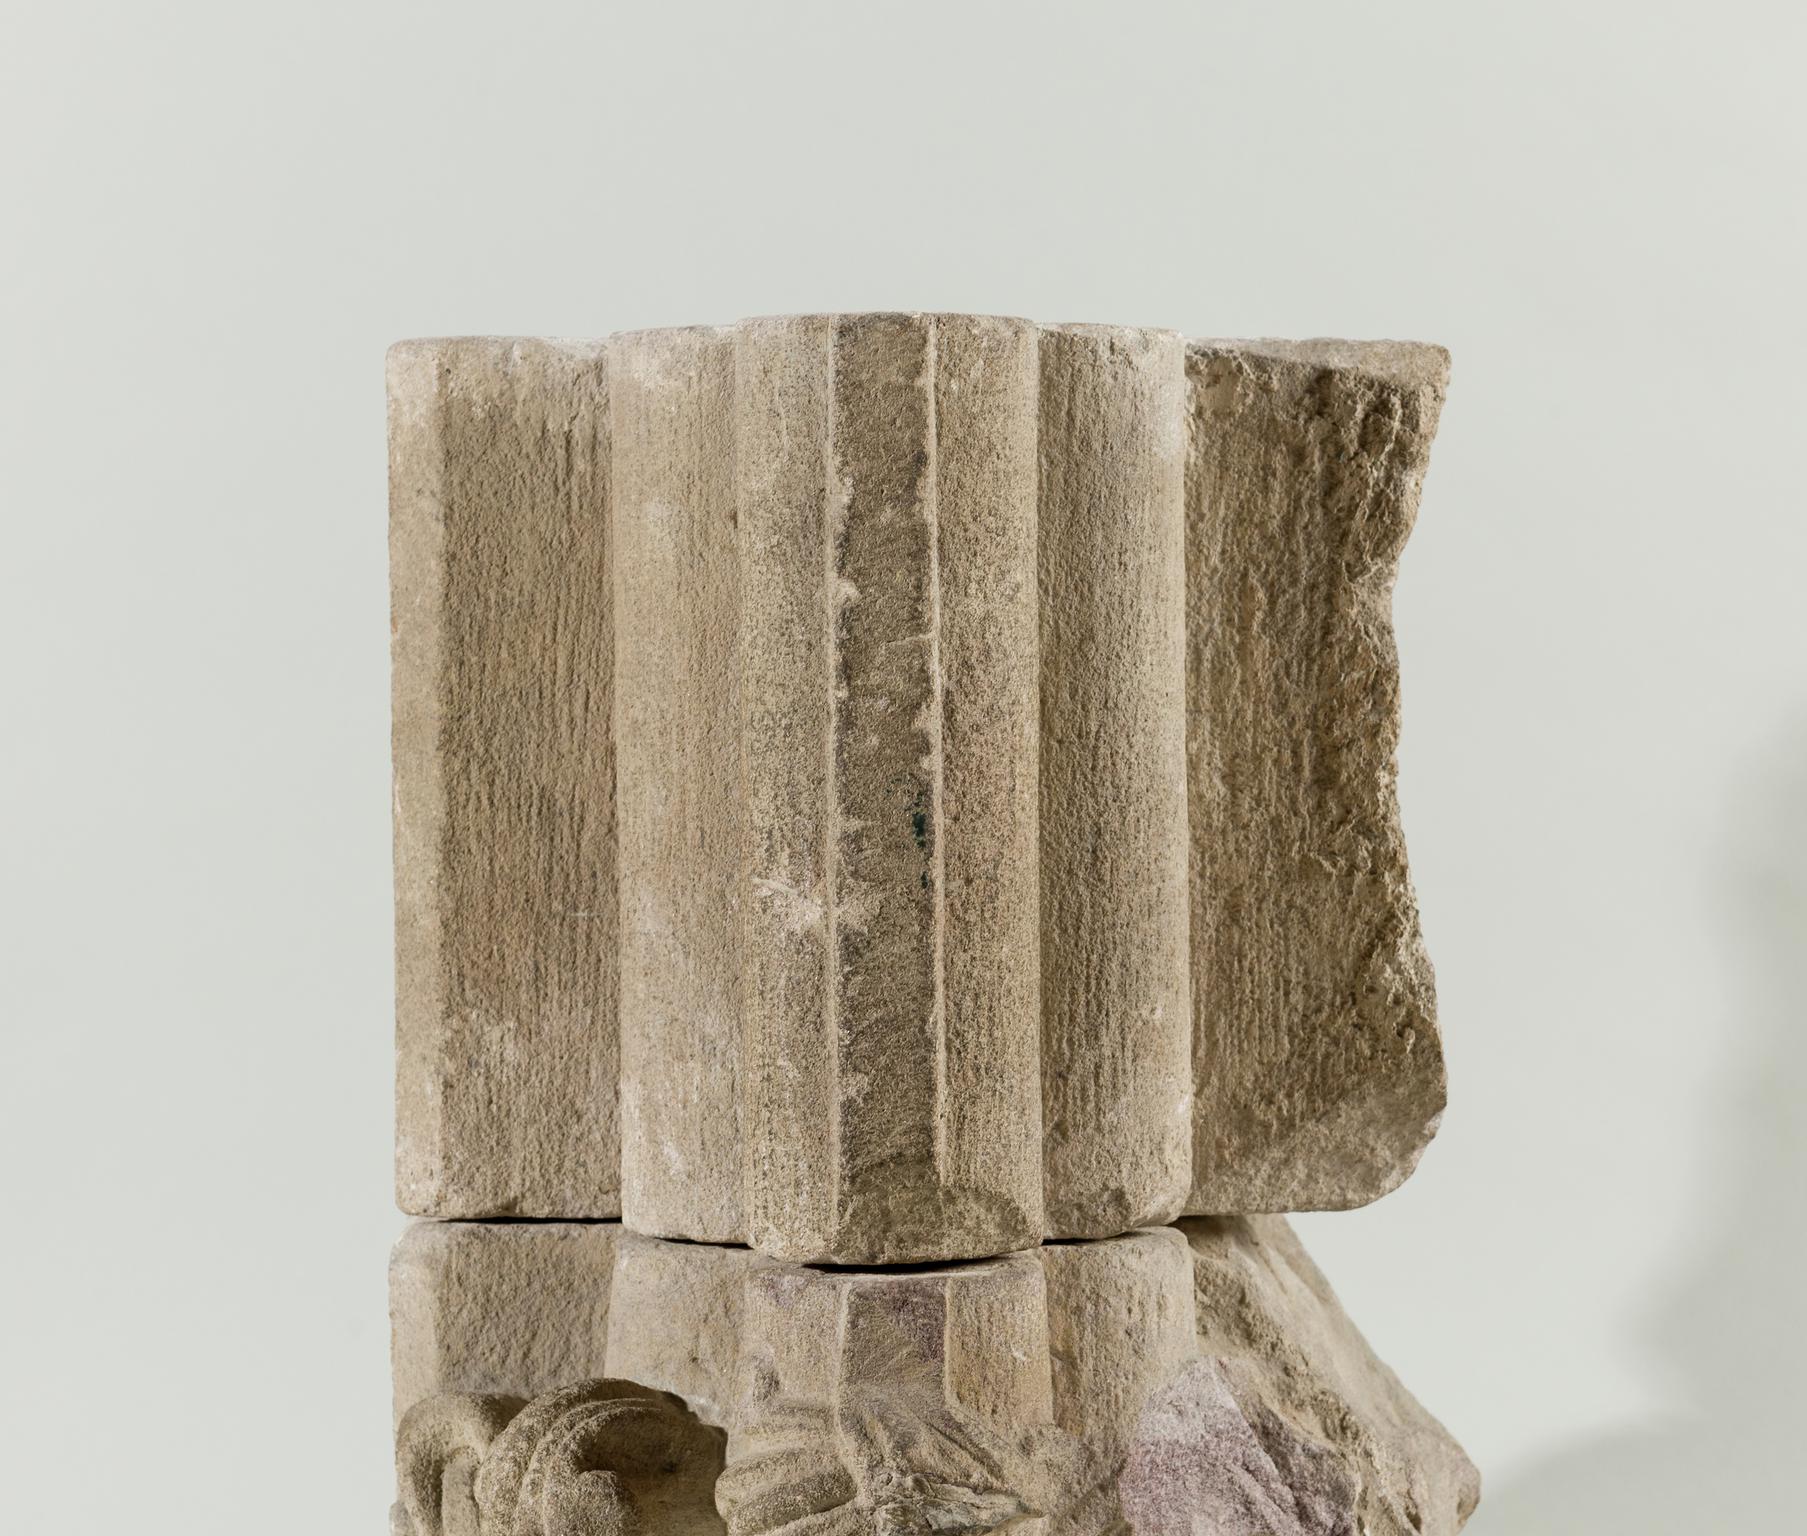 Medieval stone corbel